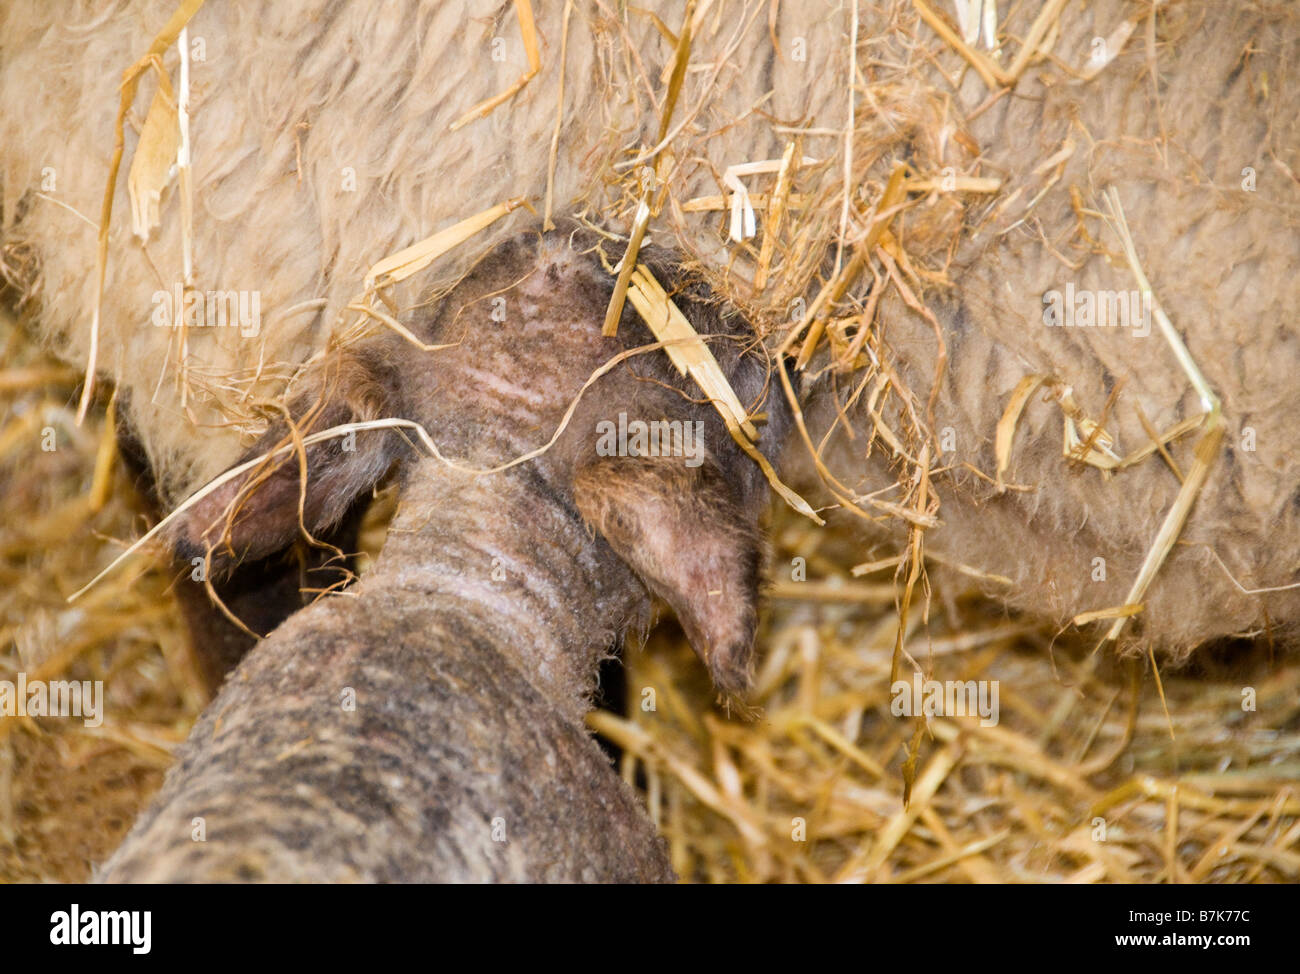 L'alimentation de brebis que le nouveau-né, Surrey, UK Banque D'Images